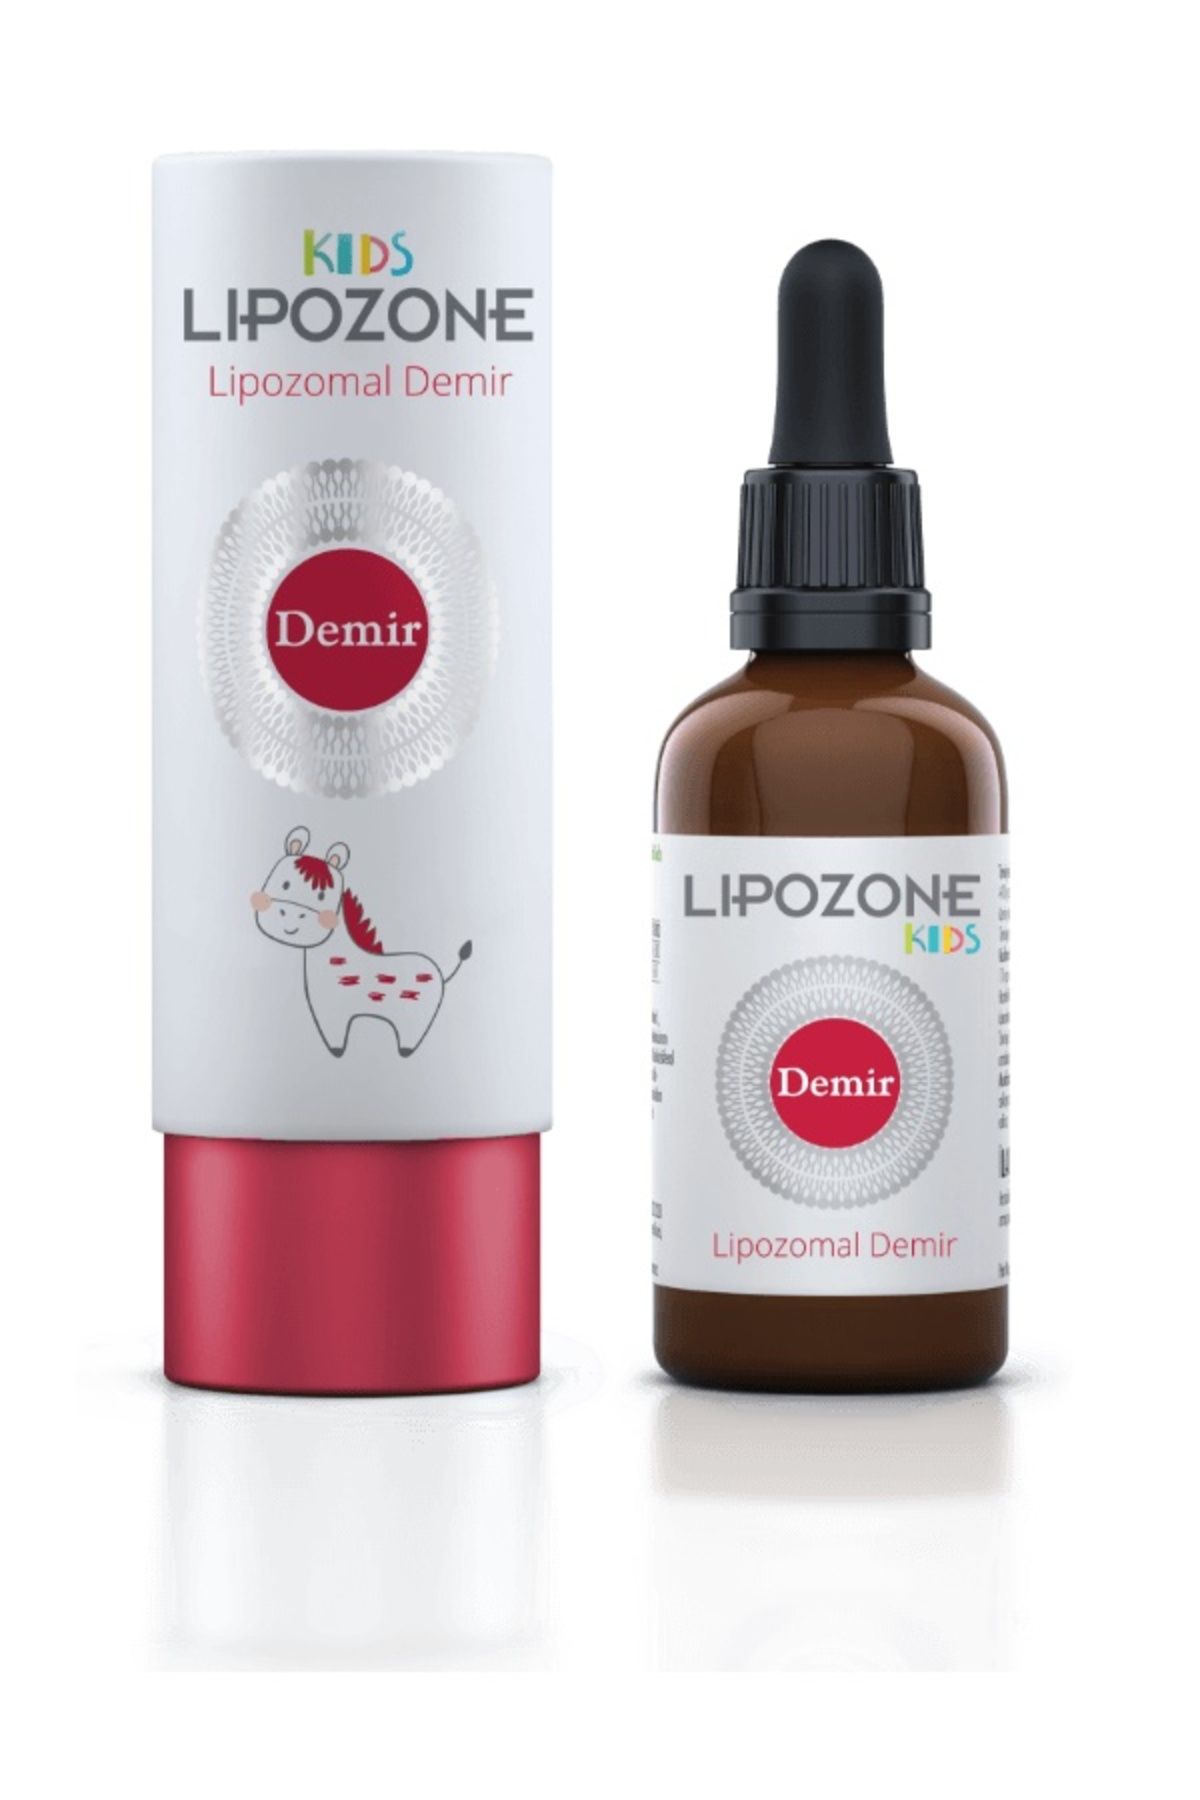 Lipozone Kids Lipozone Lipozomal Demir 15 ml